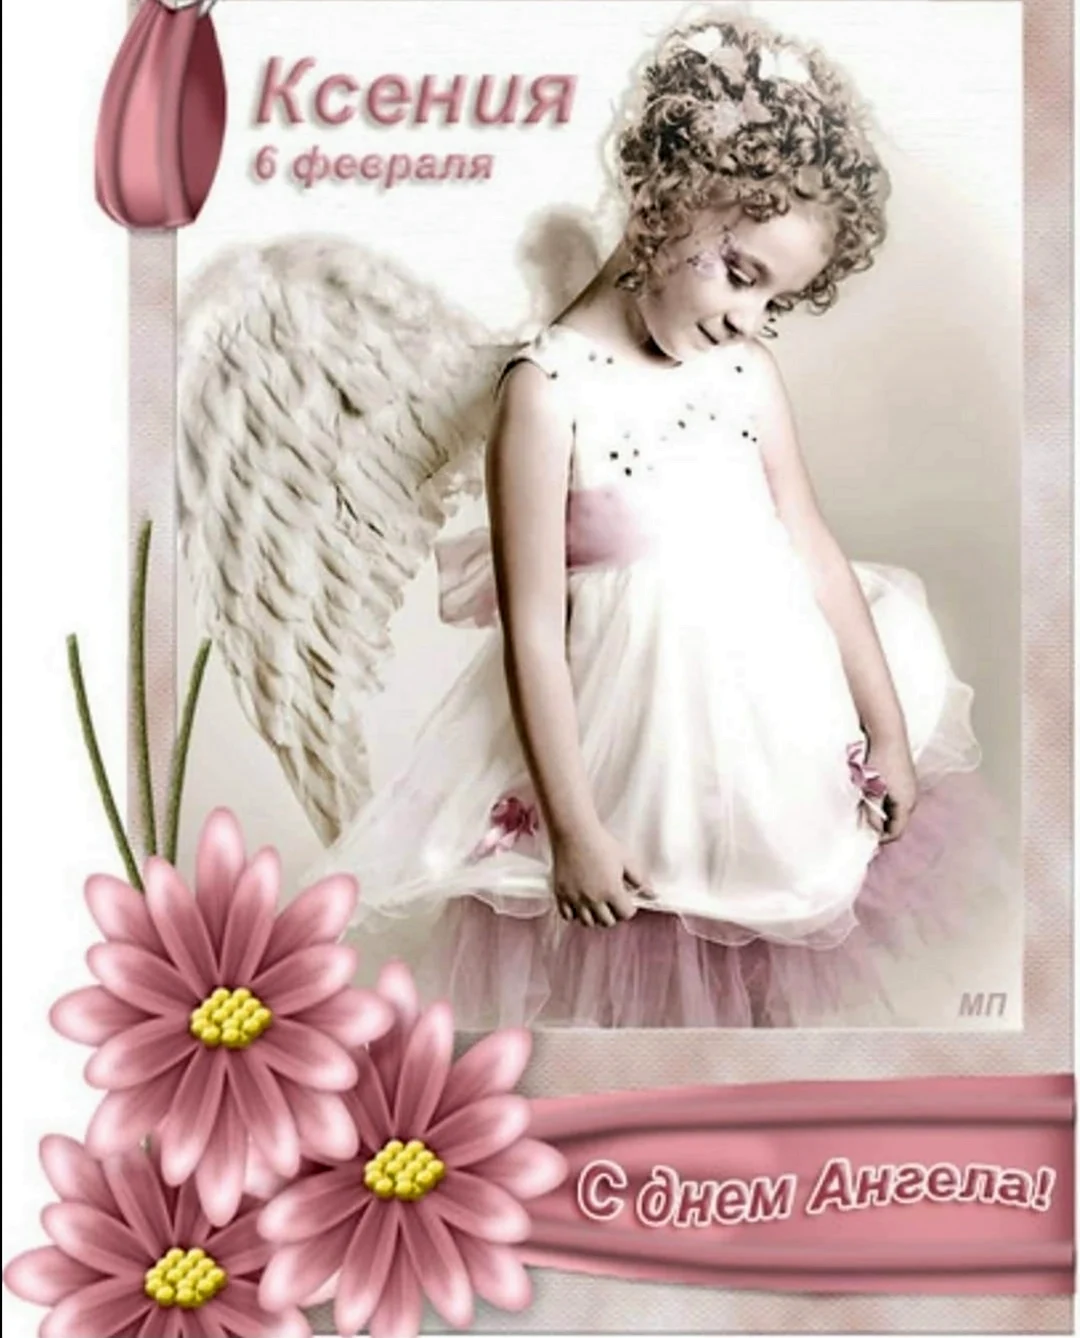 6 Февраля день ангела Ксении. Открытка с днем рождения